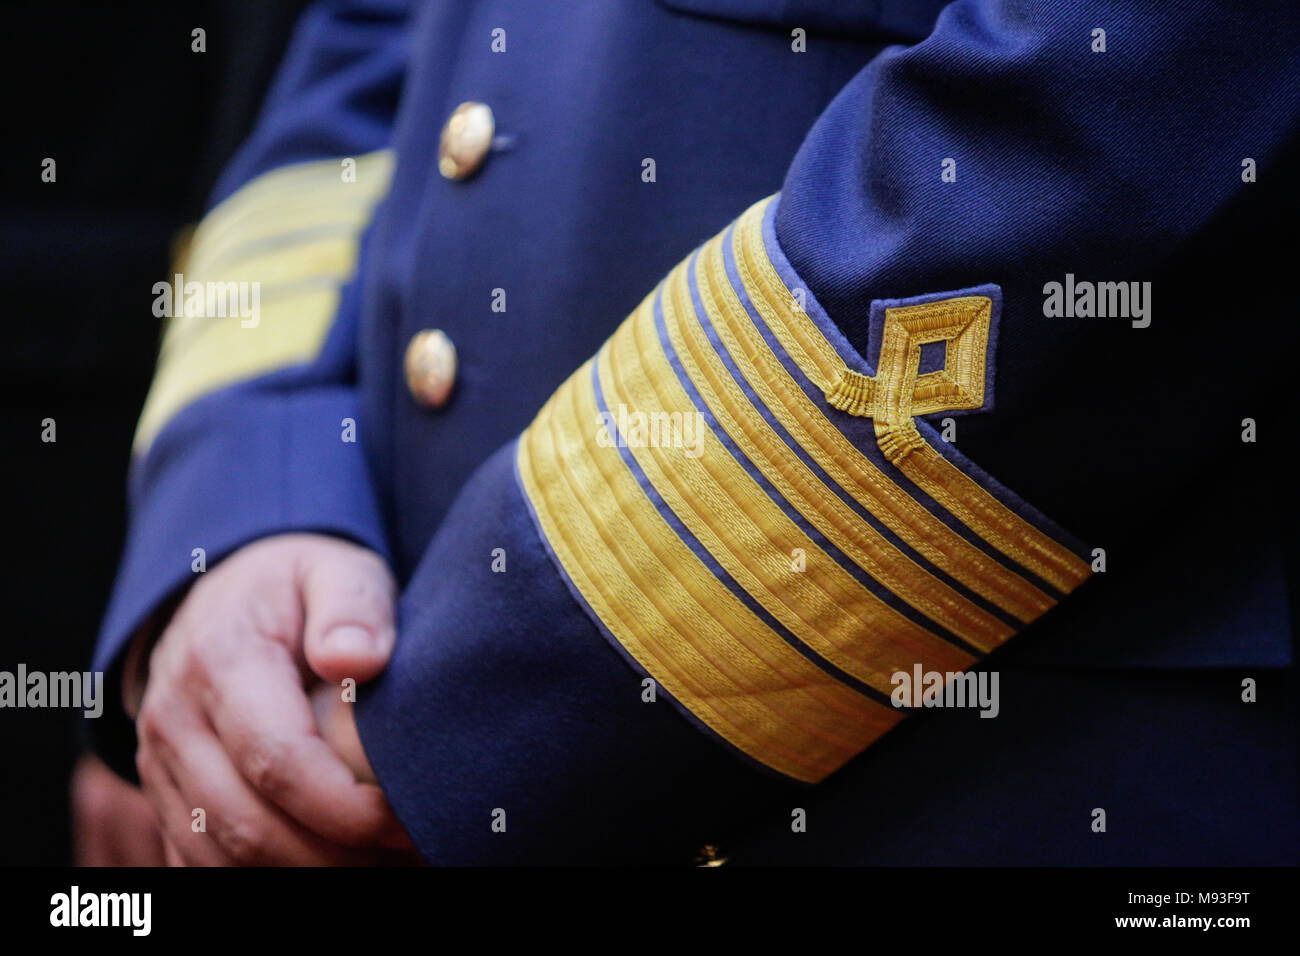 Militärische Abzeichen auf der Uniform eines rumänischen Armee Offizier Stockfoto